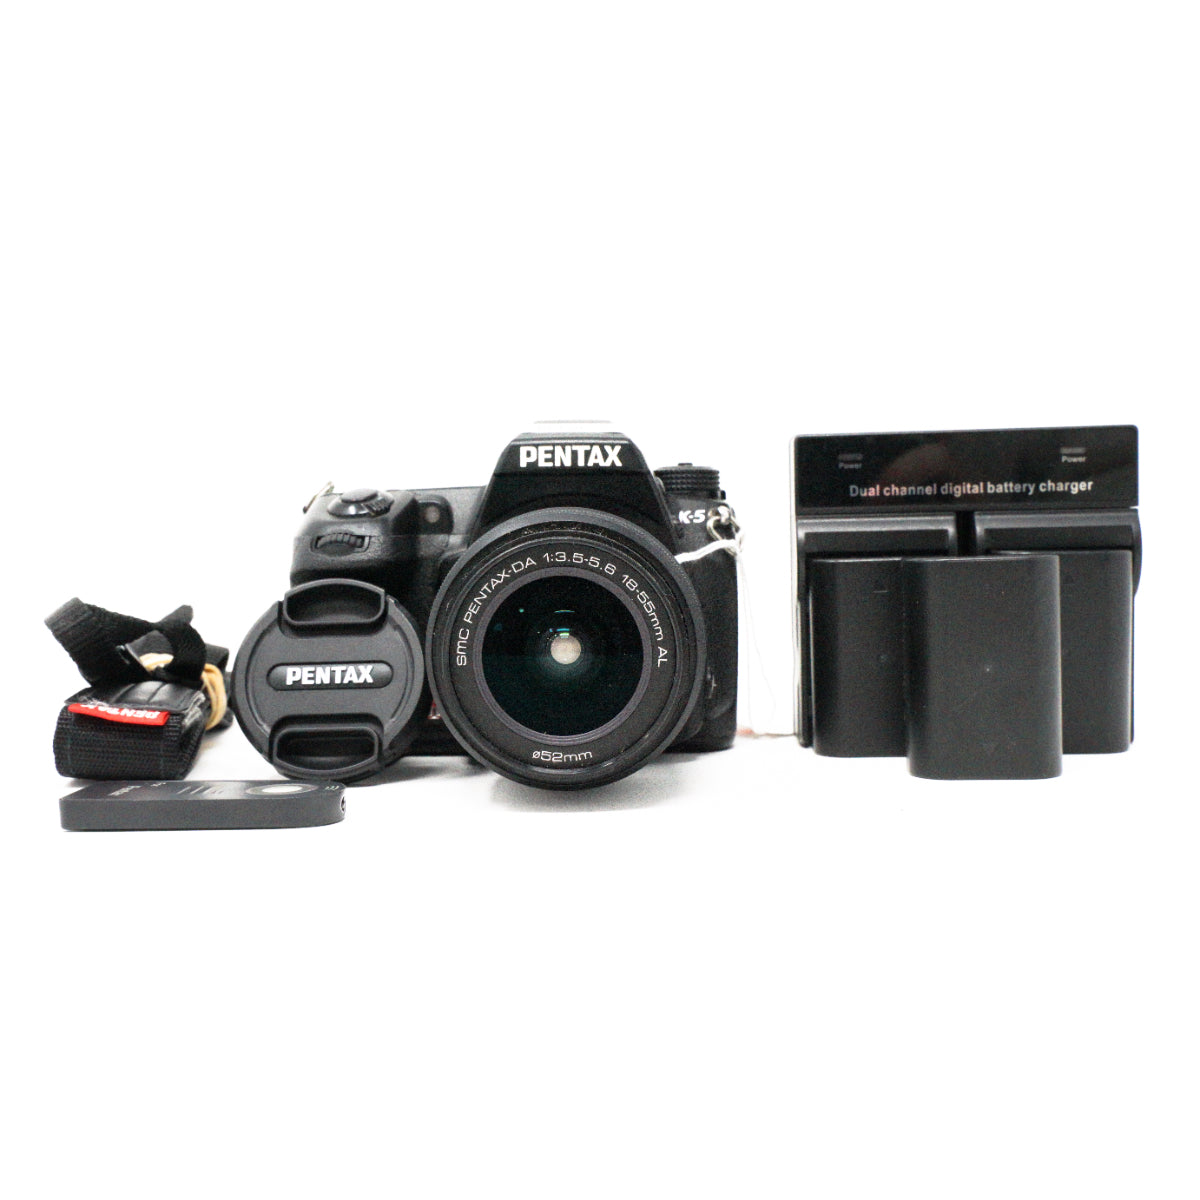 Used Pentax K-5 + 18-55mm F3.5-5.6 AL DSLR camera + 4 batteries